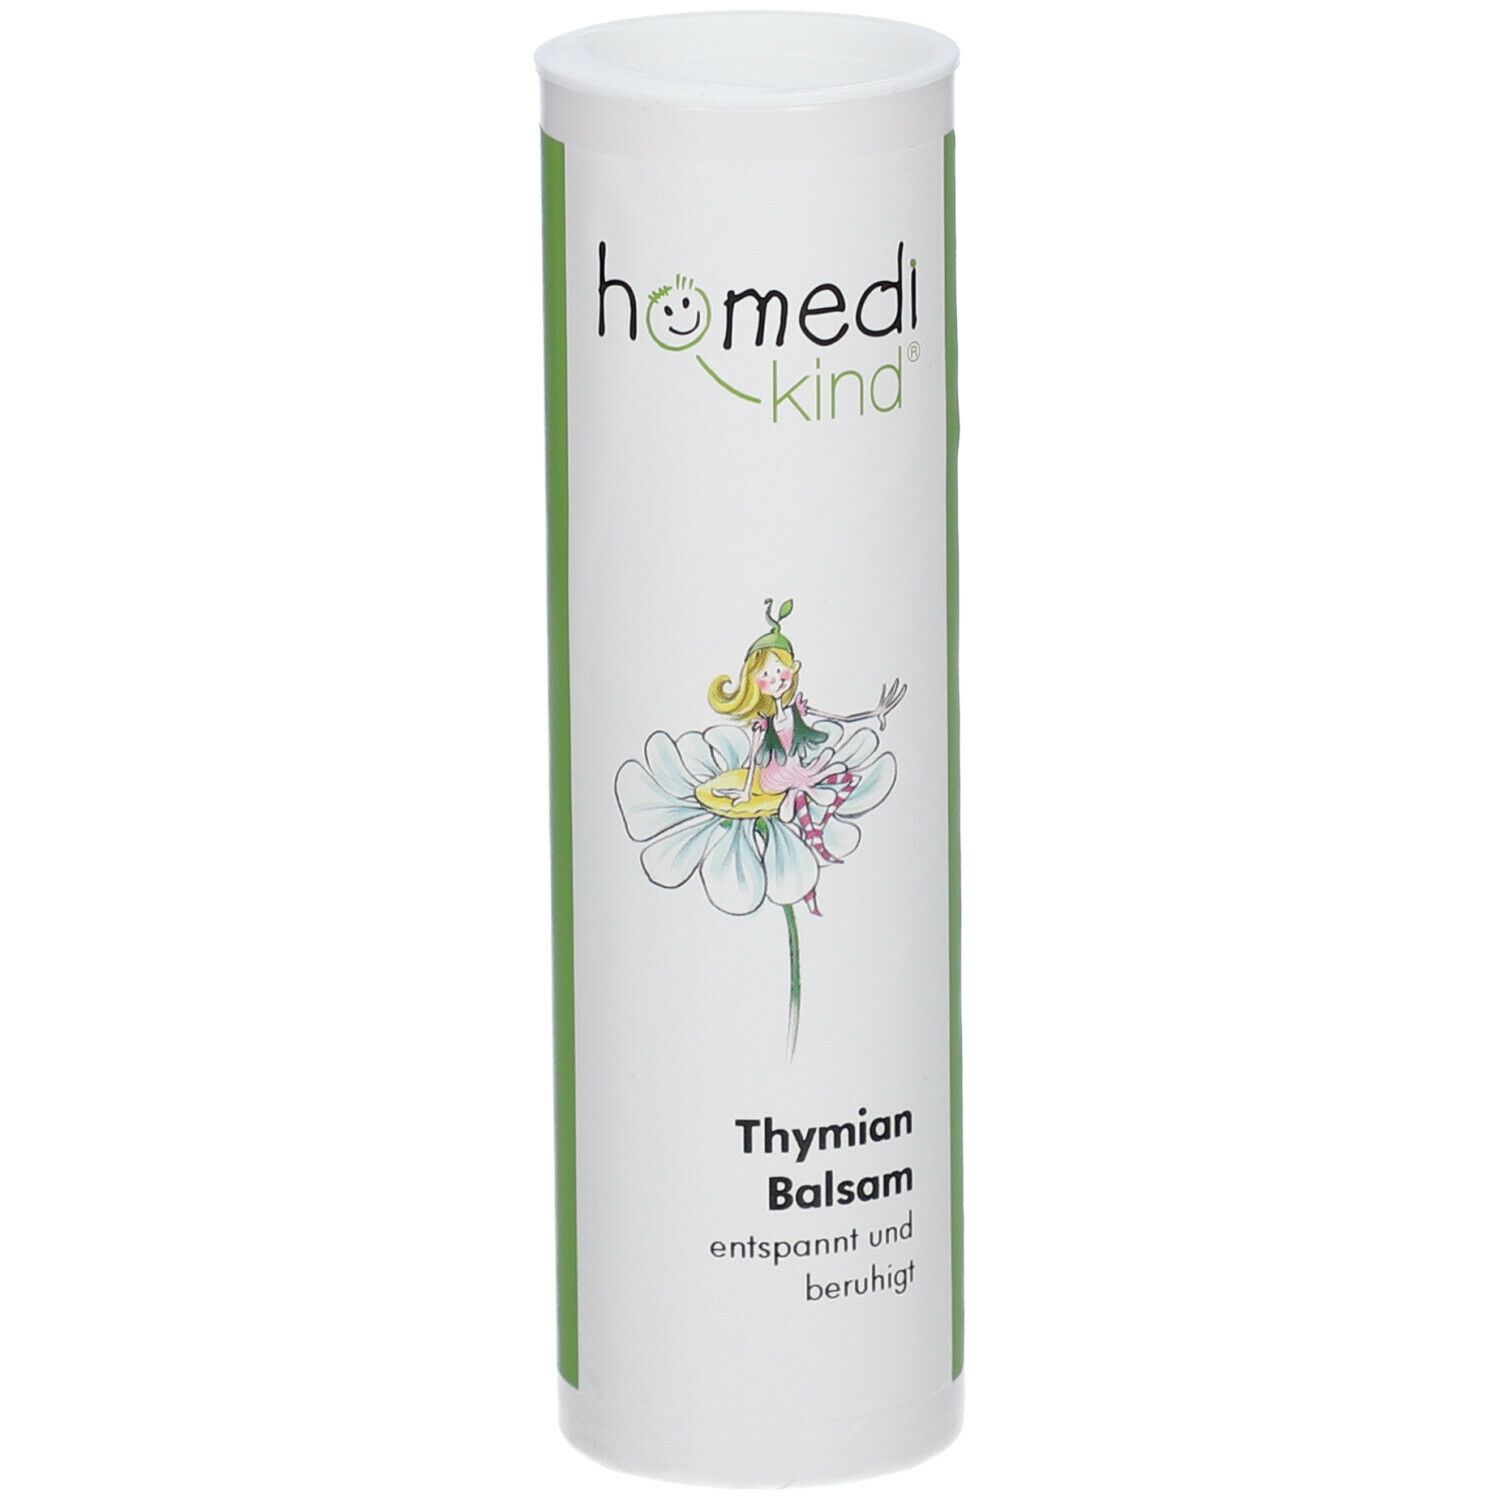 homedi-kind® Thymian Balsam